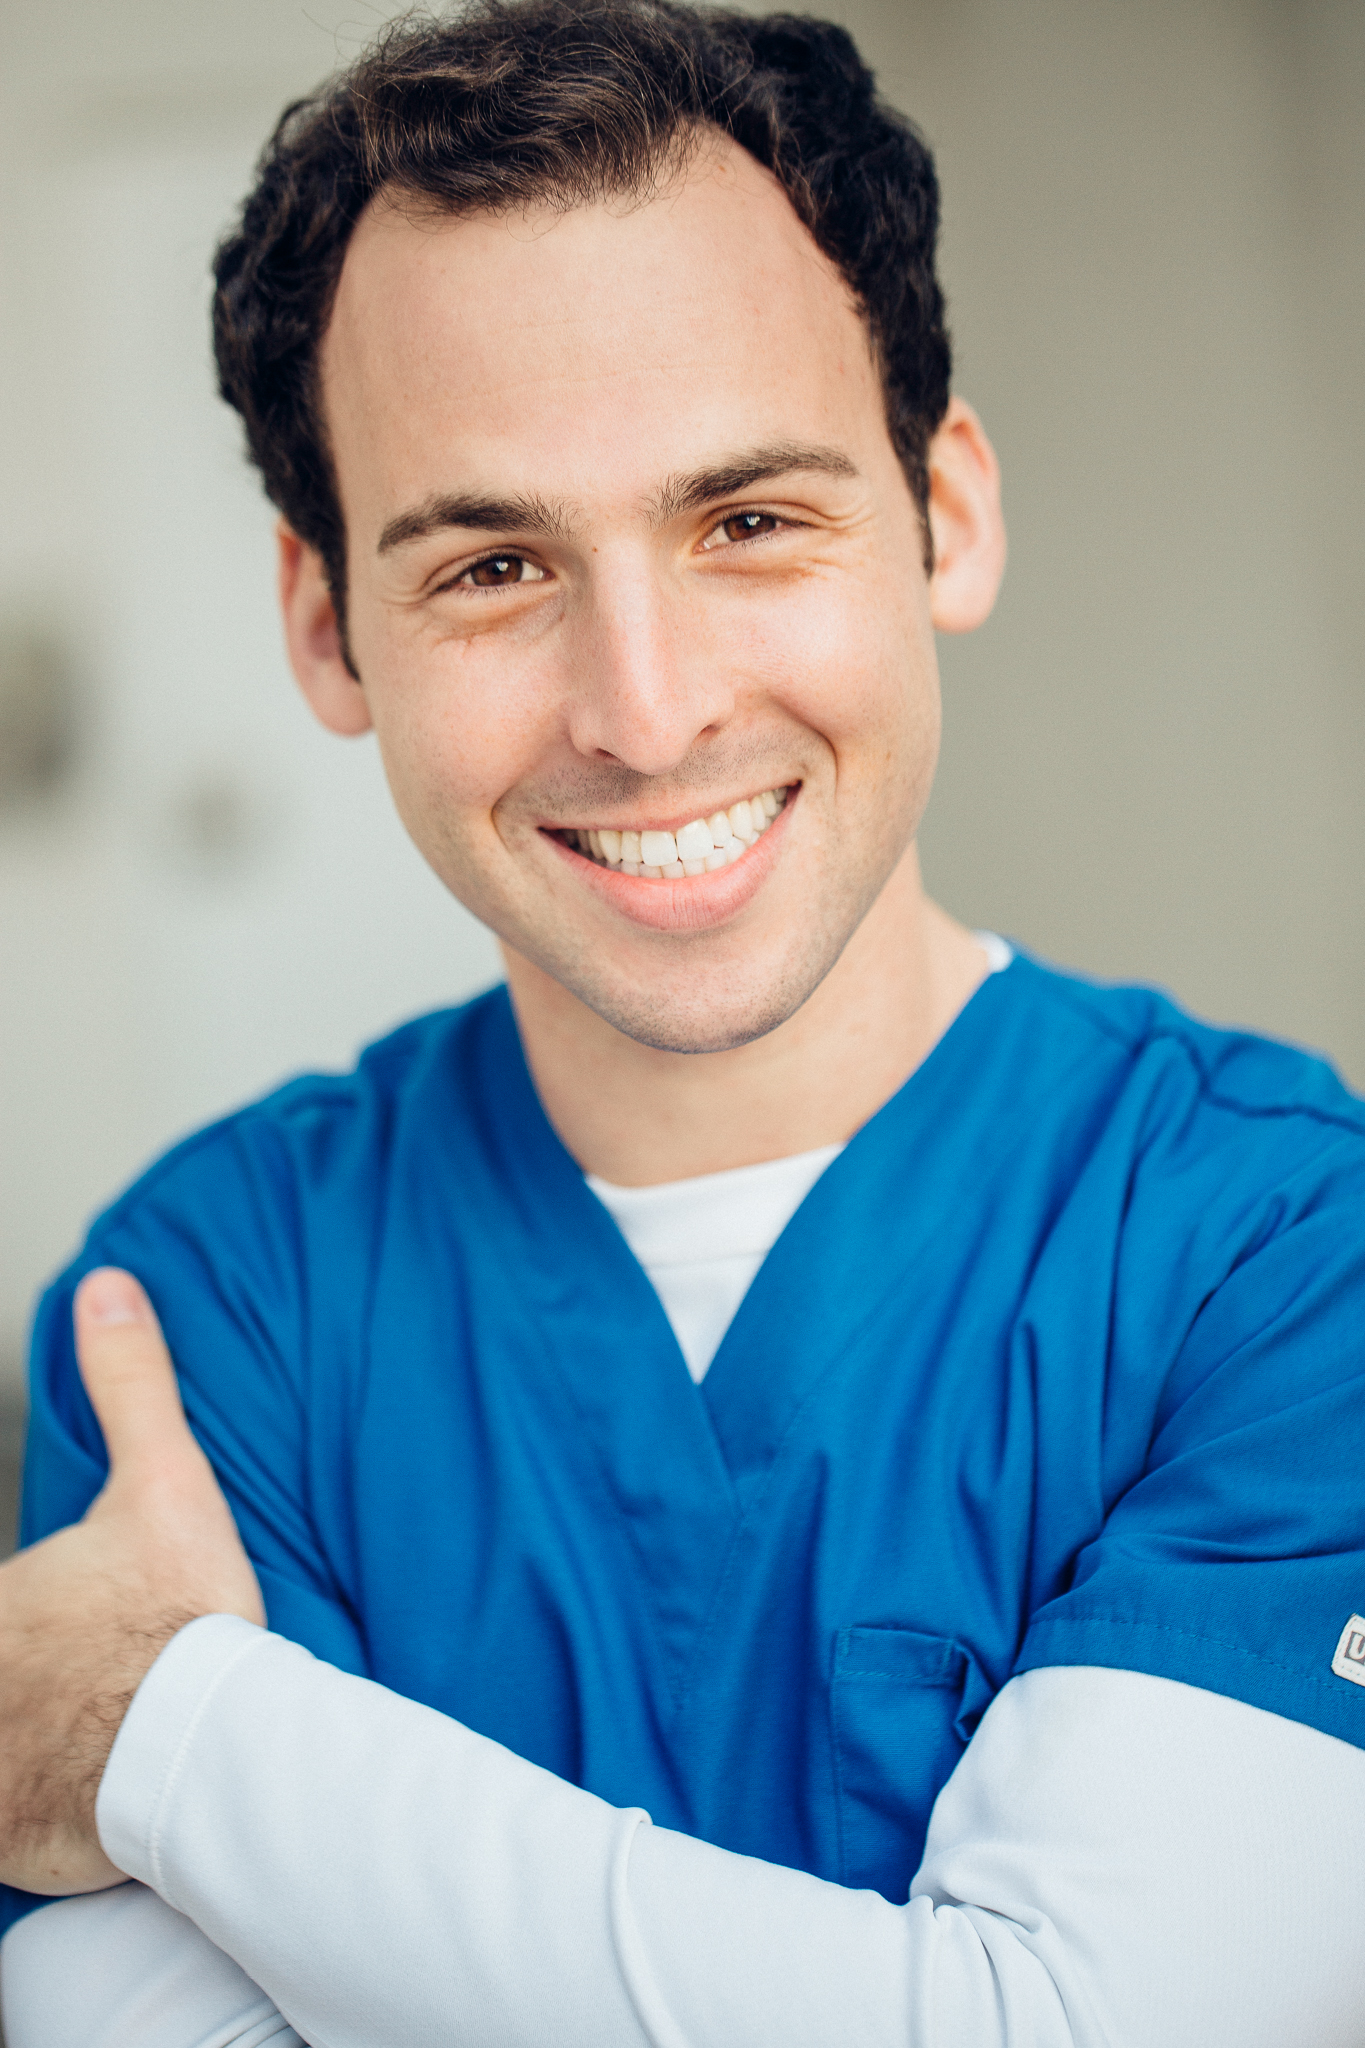 nurse or doctor smiling SAM MANDEL.jpg